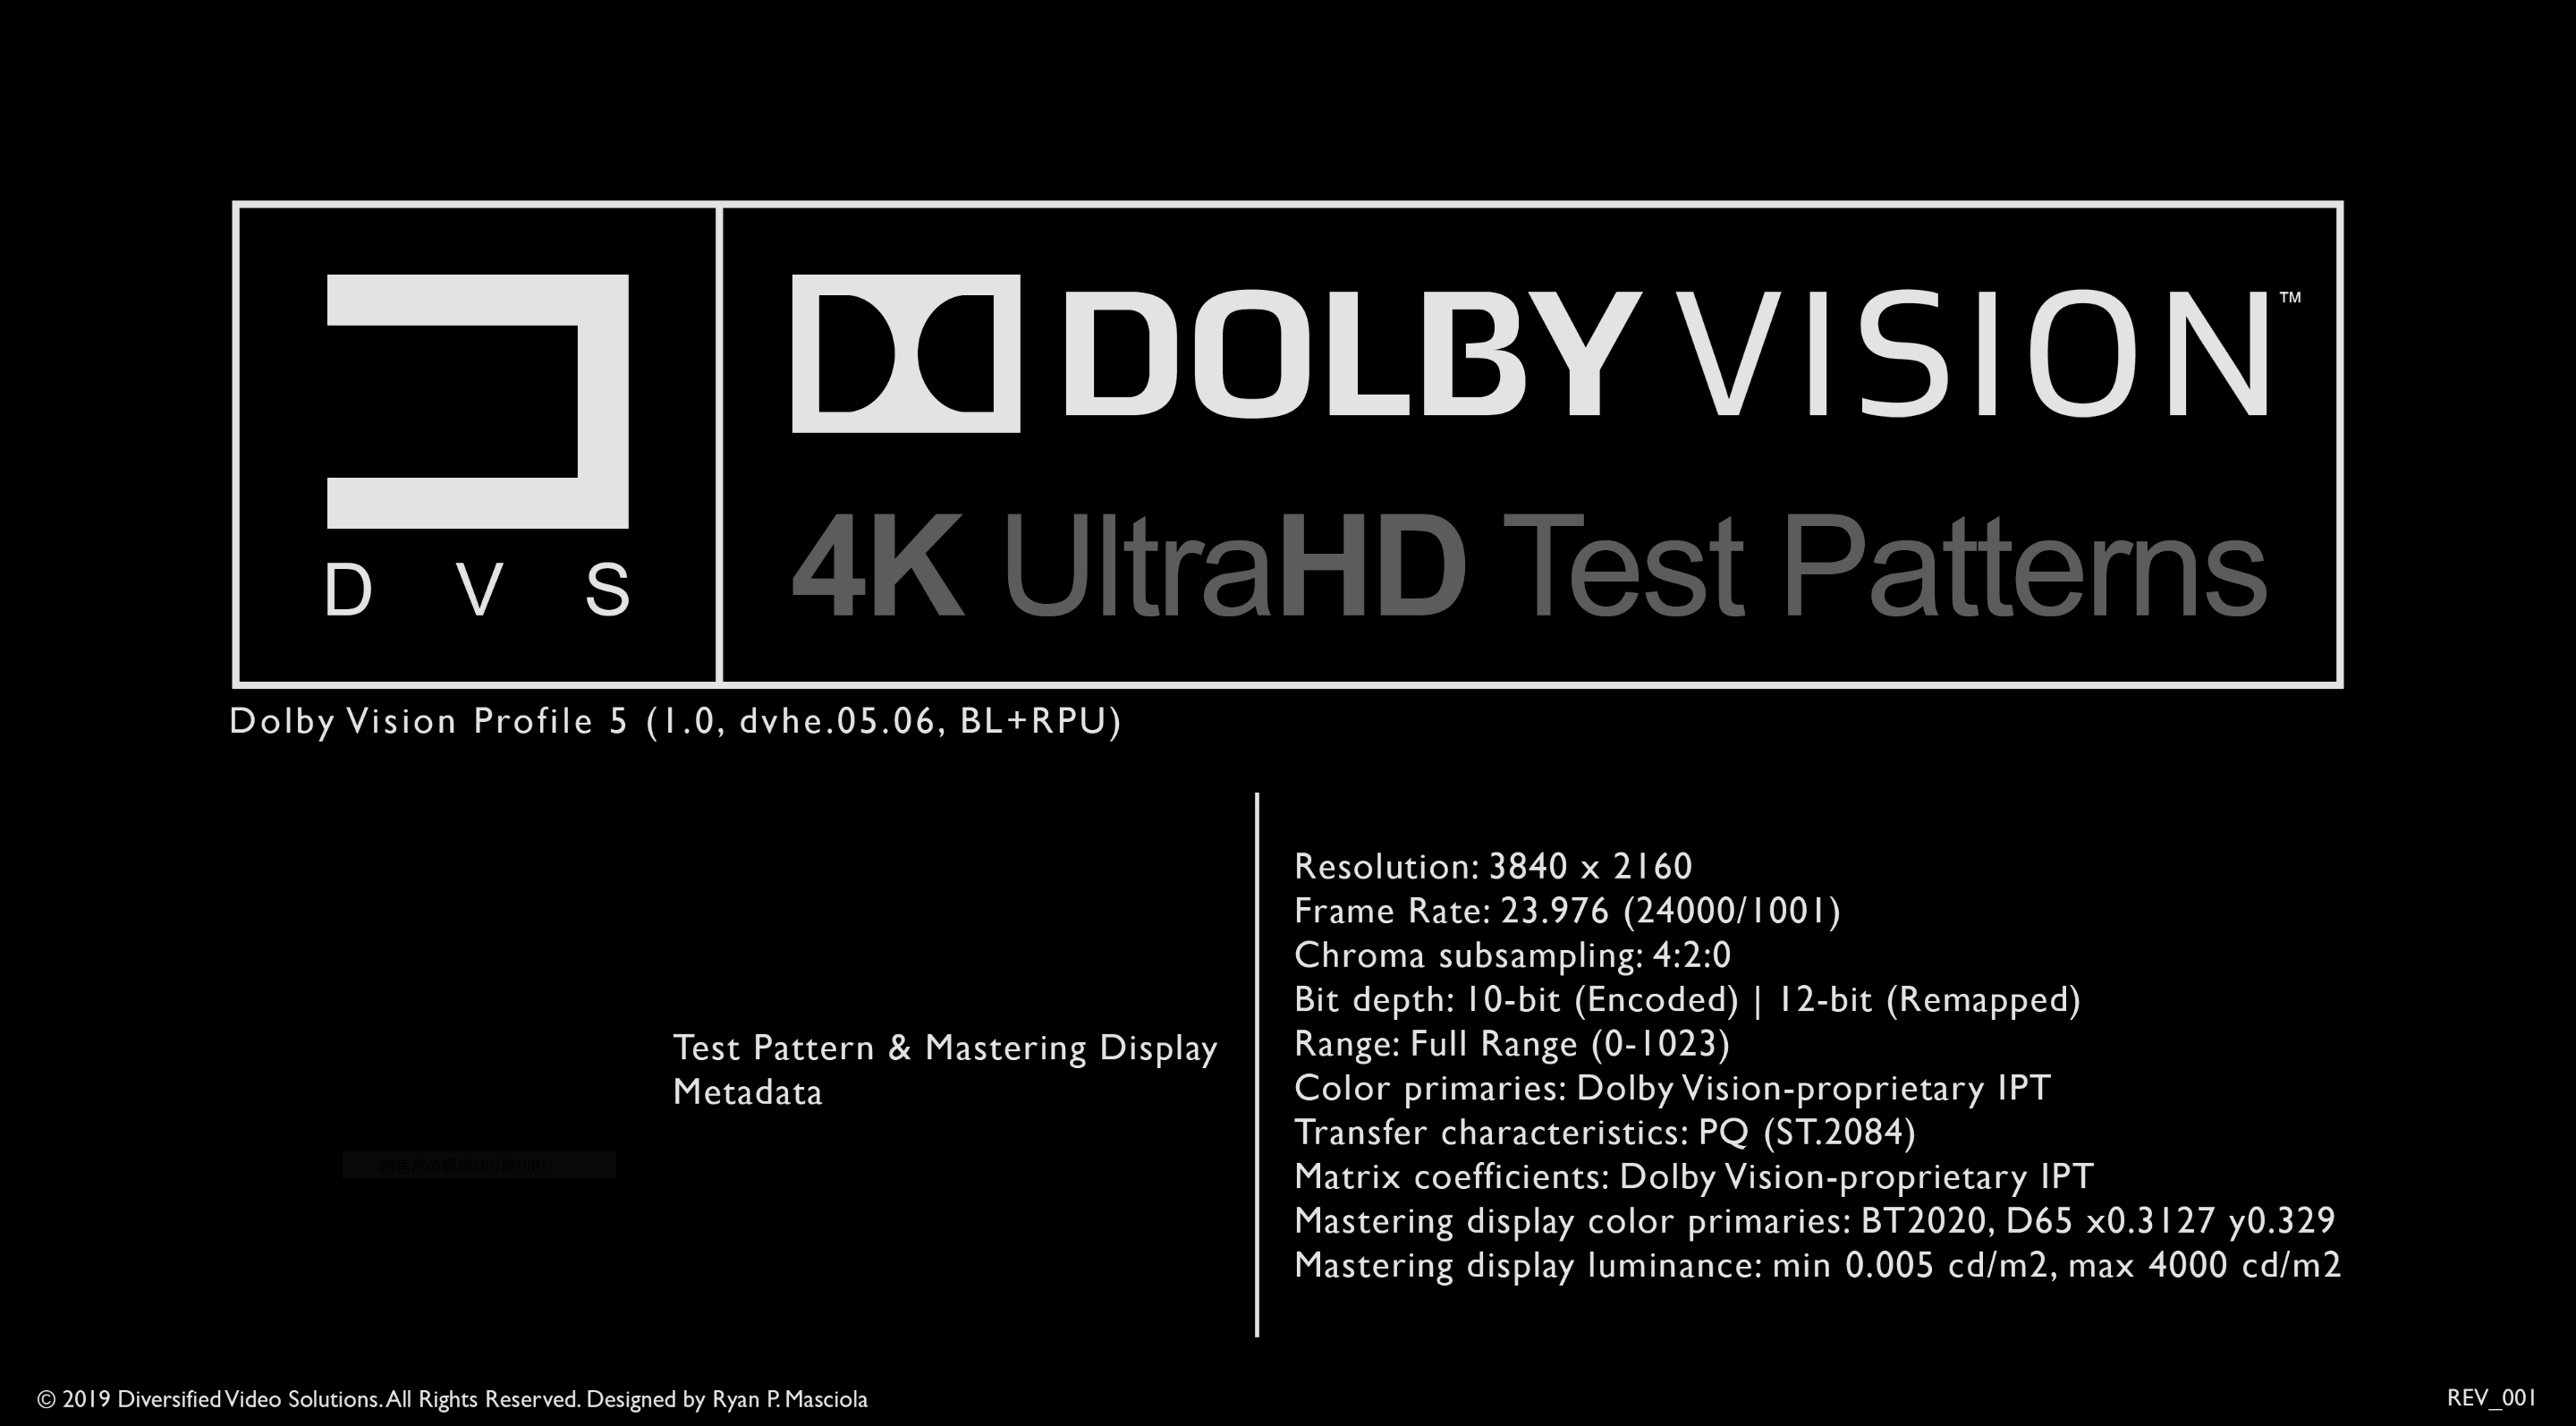 Dvs Uhd Dolby Vision テストパターン スイート Mp4 に関する製品情報 Edipit